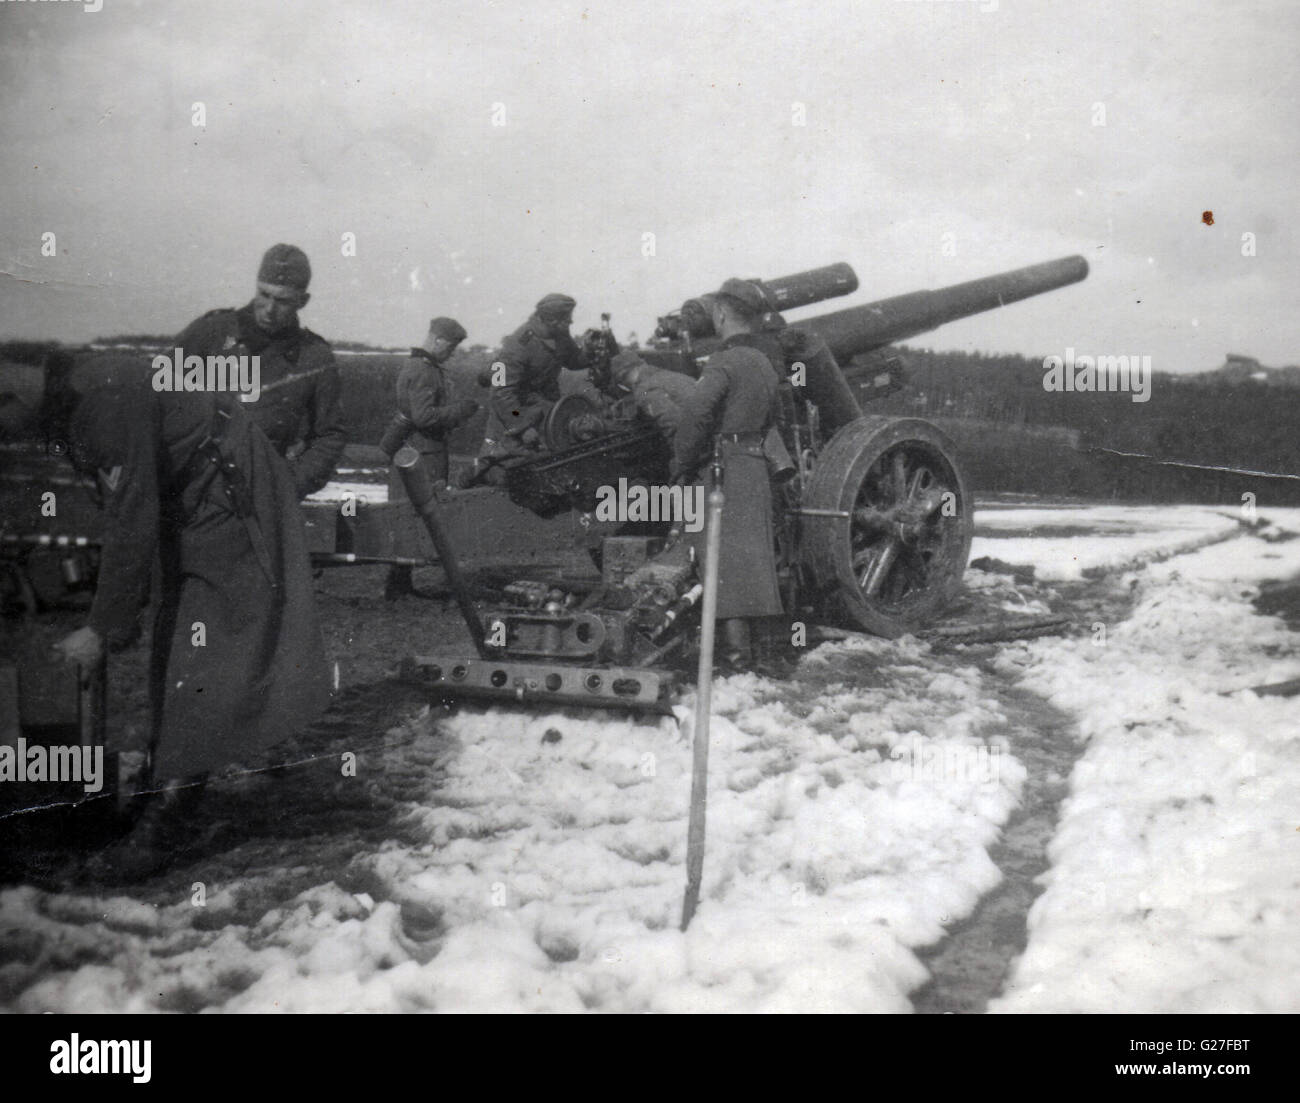 File:800 mm gun gustav in Soviet Union 1941.jpg - Wikimedia Commons